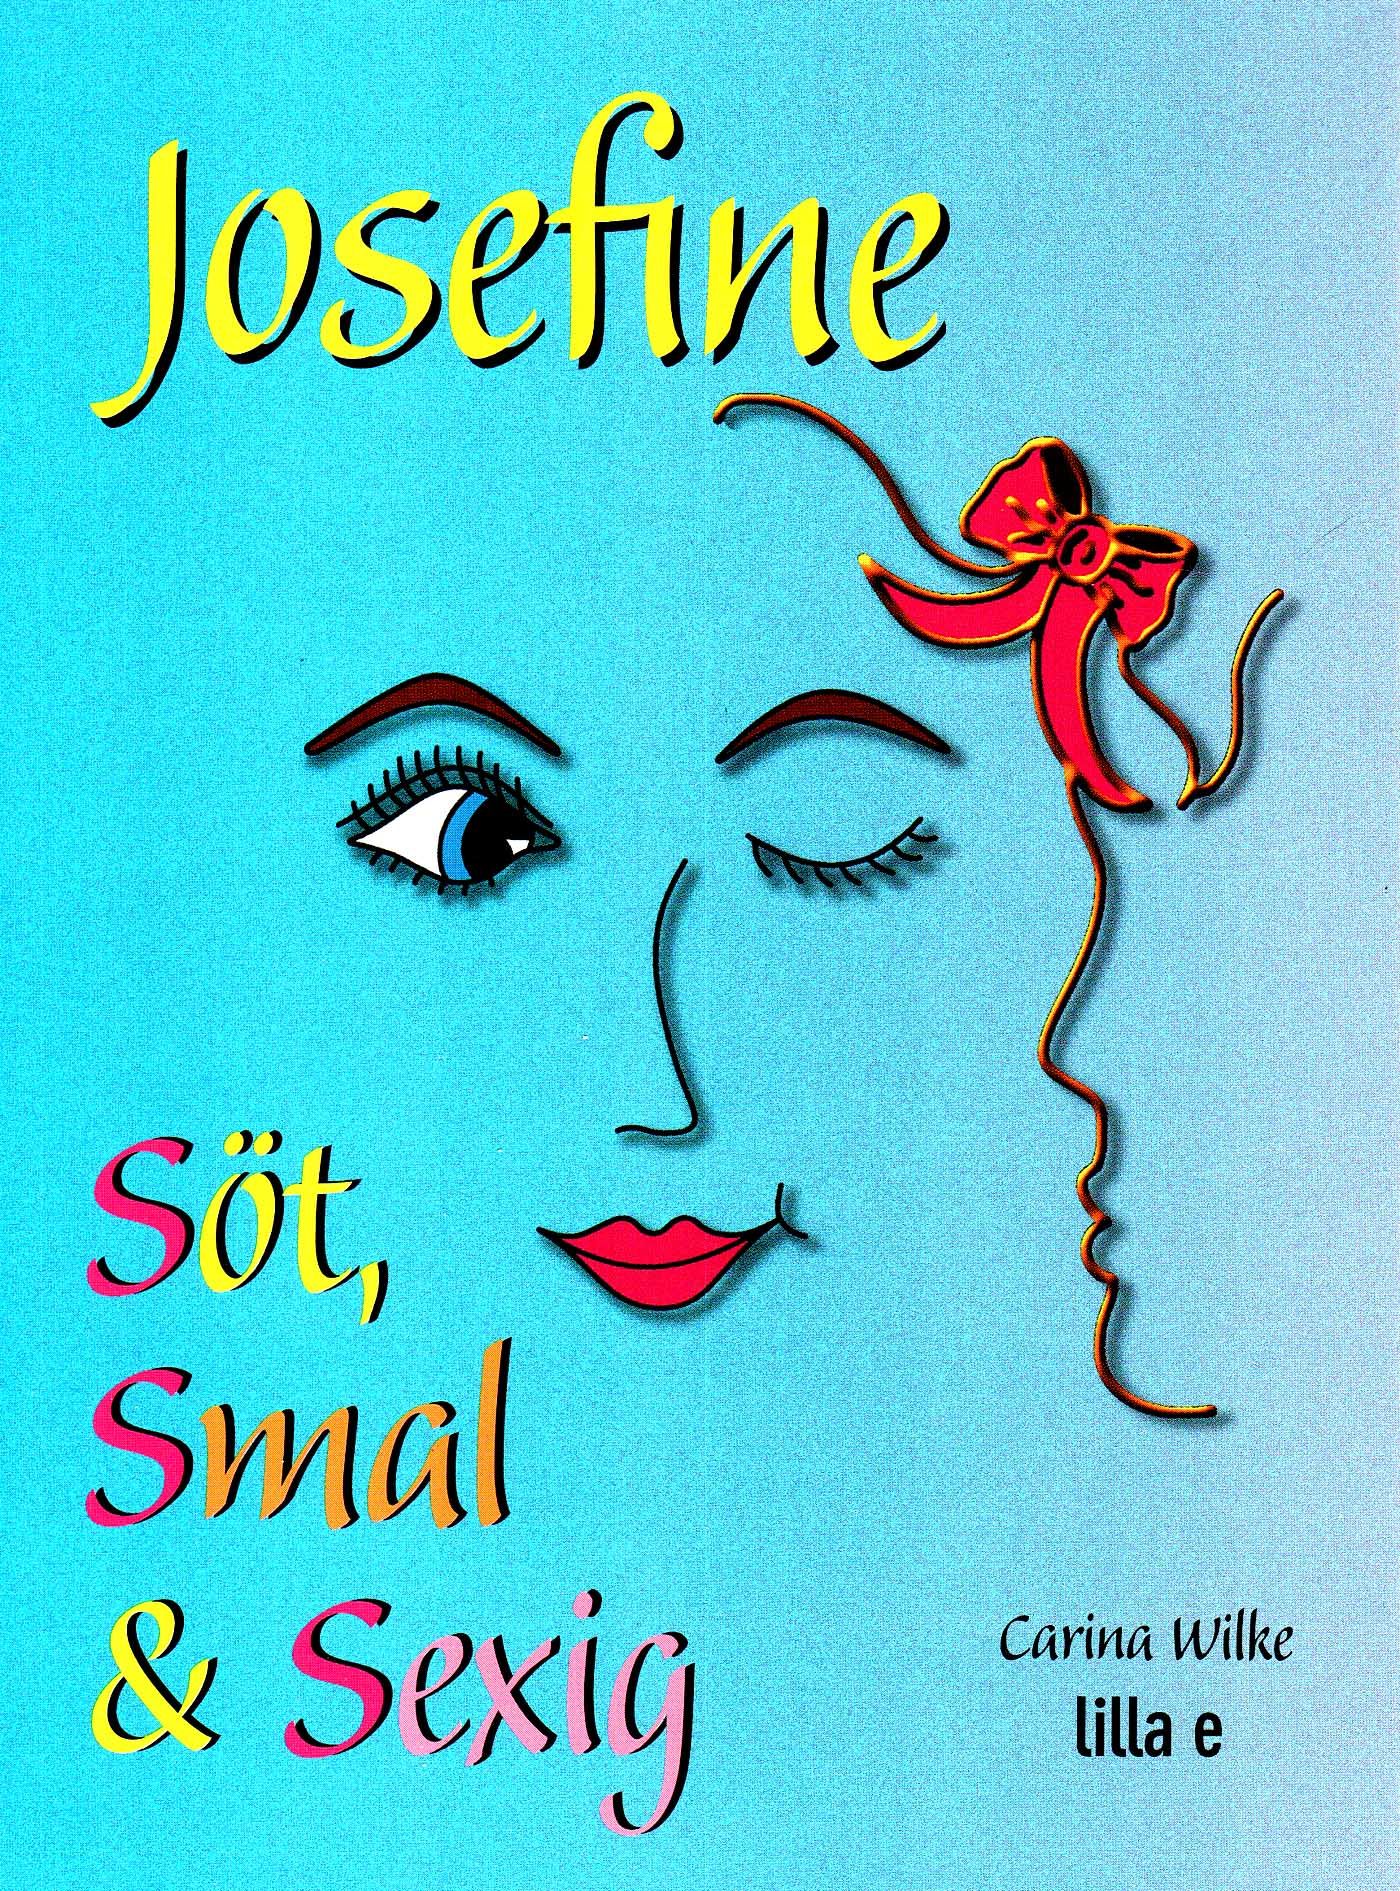 Josefine söt, smal & sexig, ljudbok av Carina Wilke